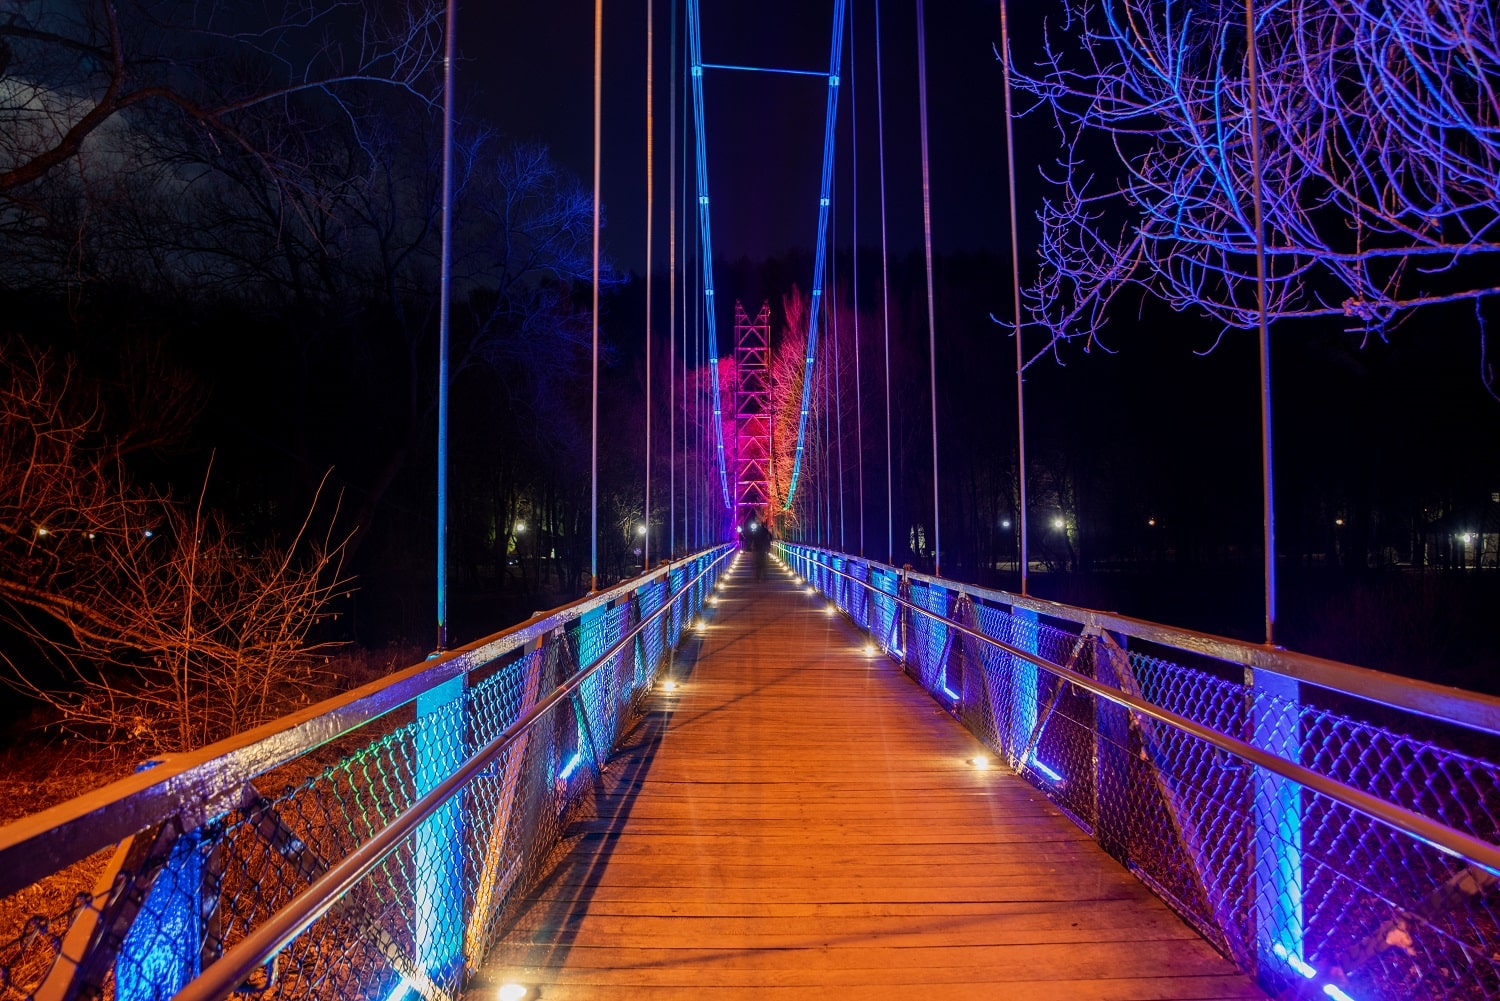 Iluminacje obiektów inżynieryjnych. Widok na most oświetlony na fioletowo i różowo